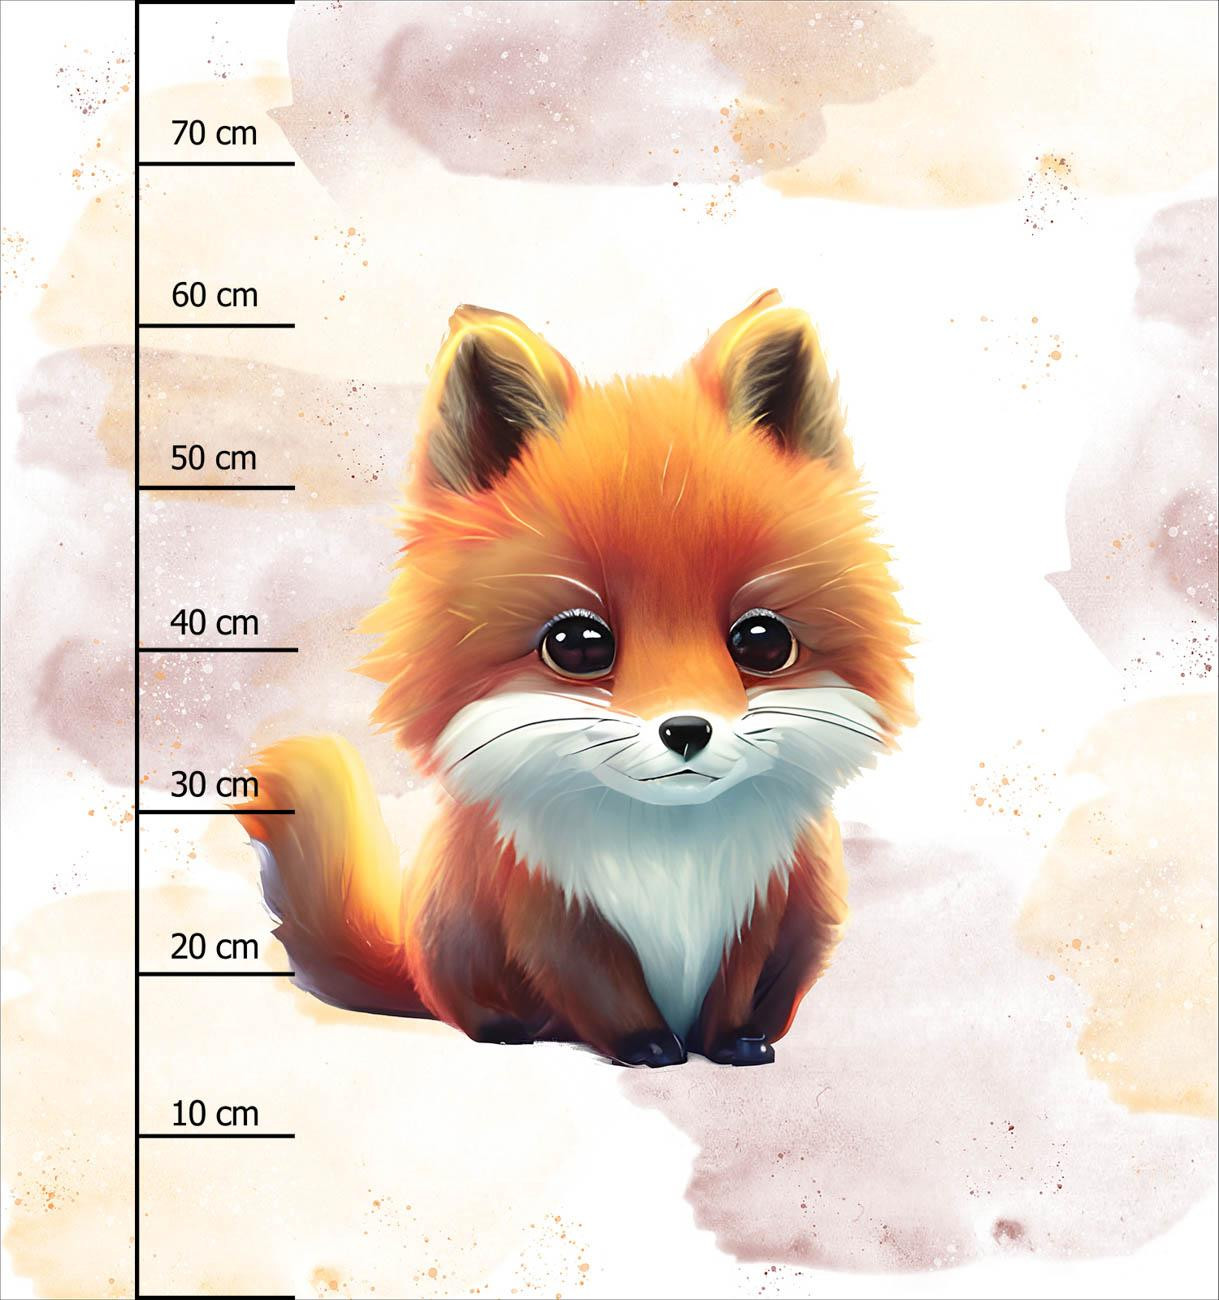 BABY FOX - Paneel (75cm x 80cm) Wasserabweisende Webware